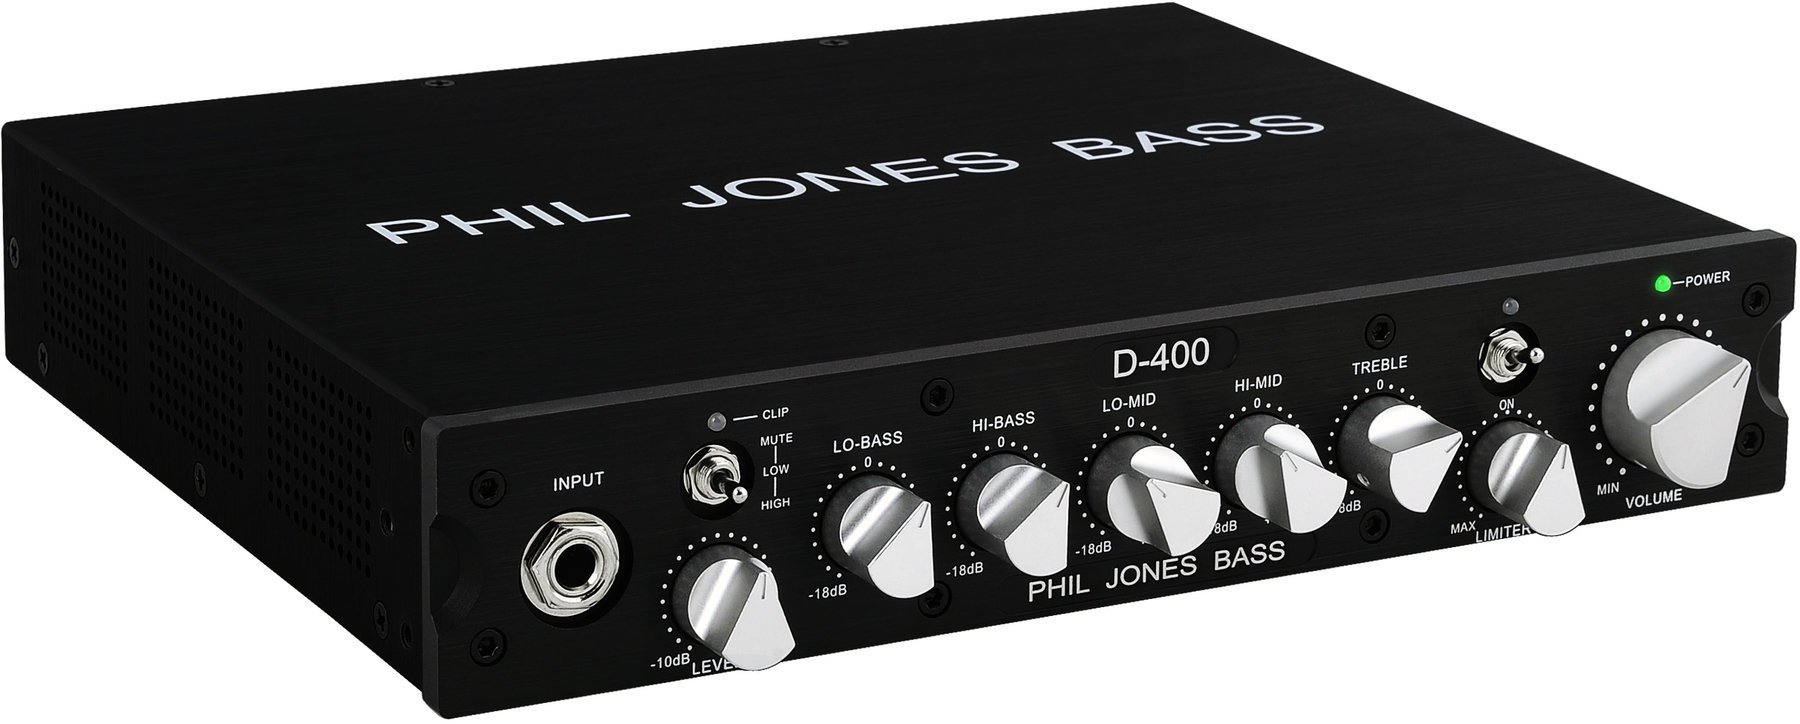 Transistor basversterker Phil Jones Bass D-400